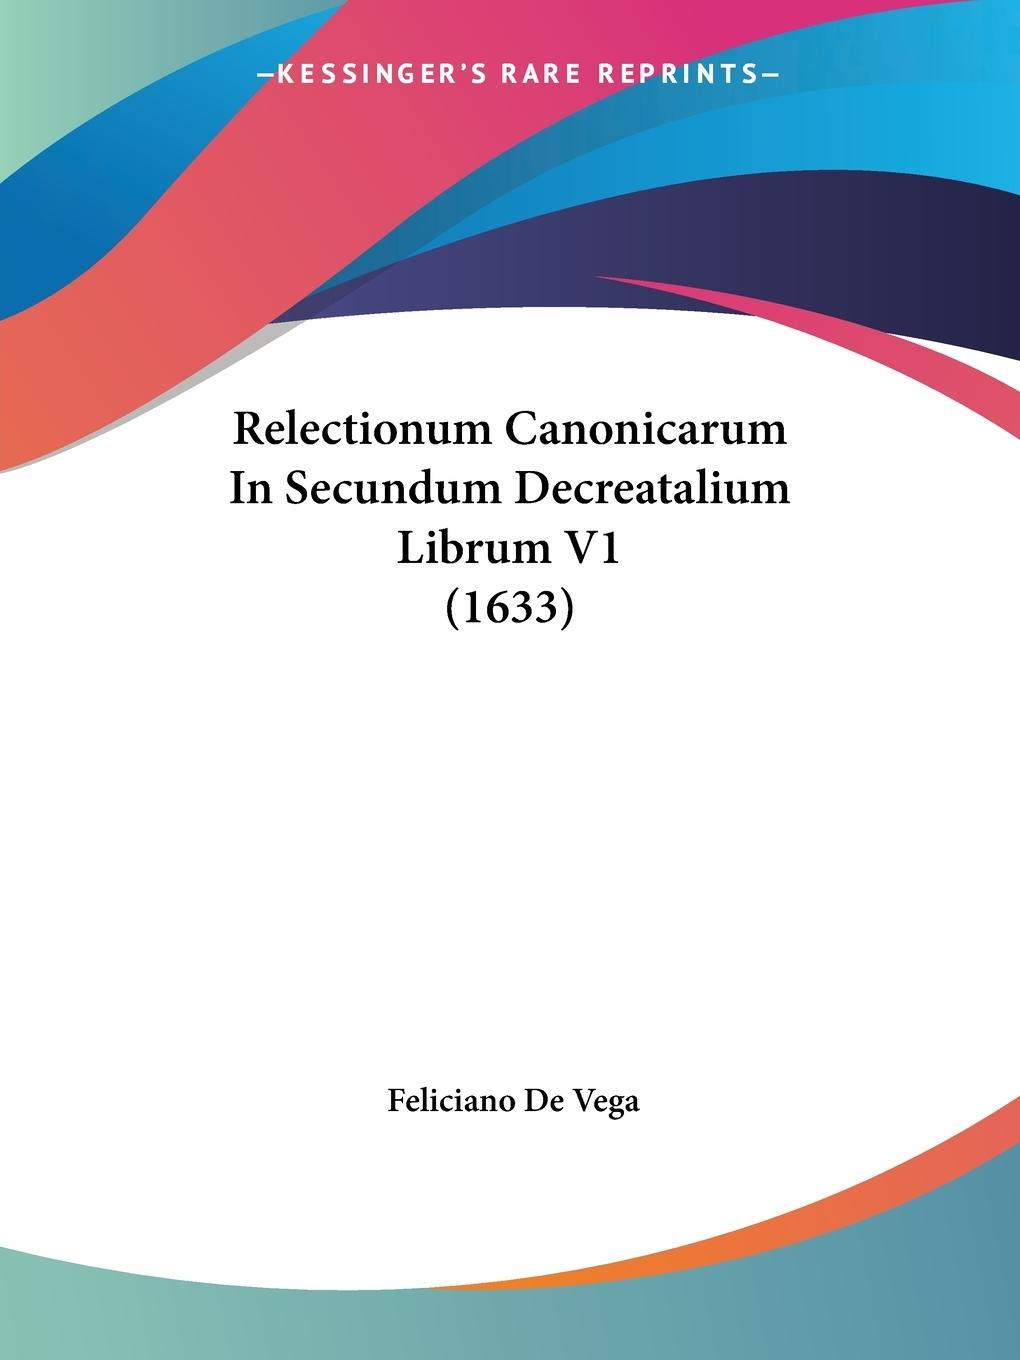 Relectionum Canonicarum In Secundum Decreatalium Librum V1 (1633) - Vega, Feliciano De